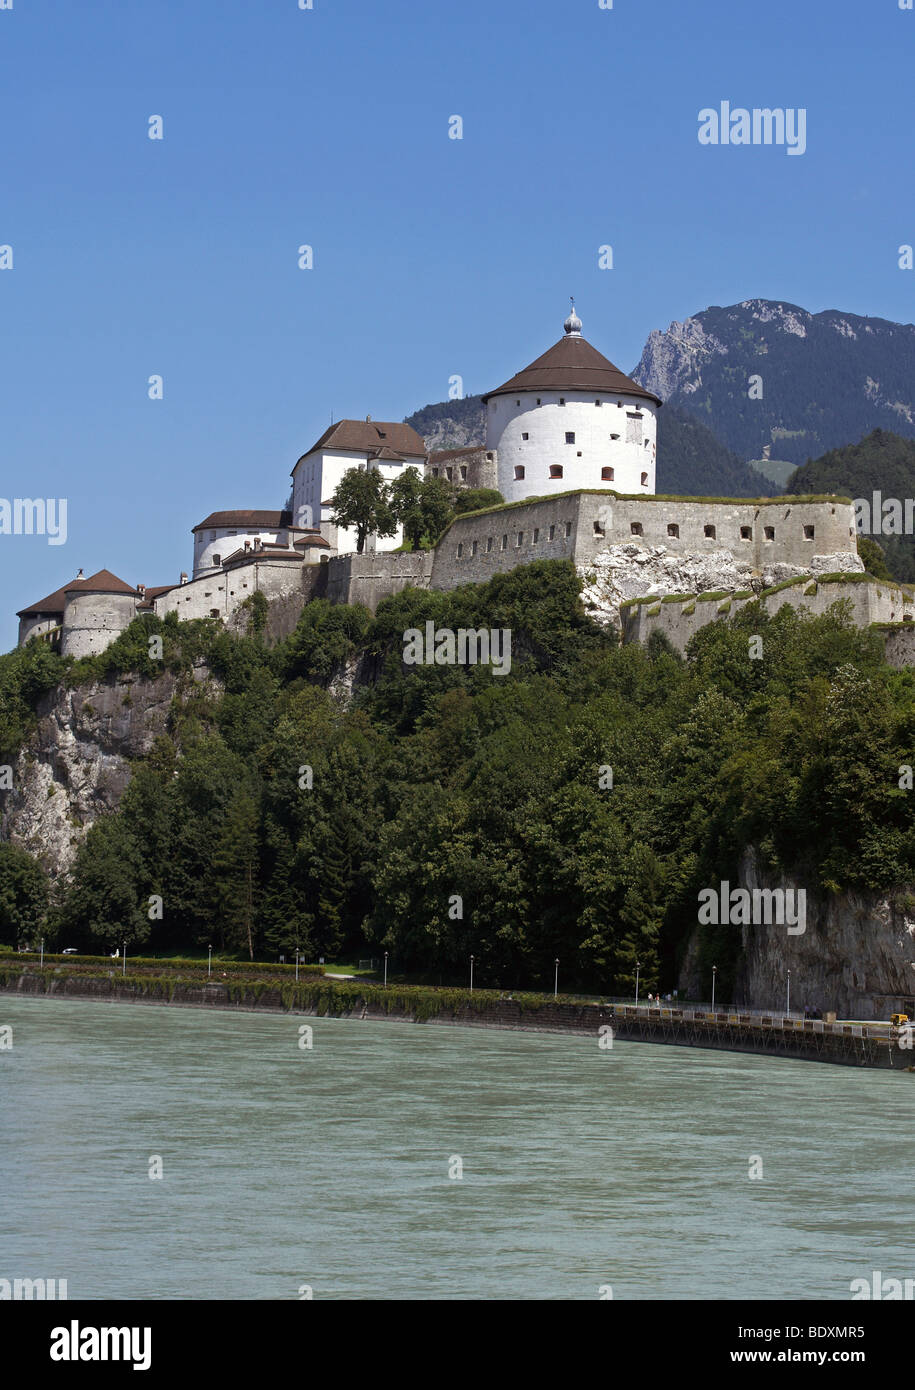 El Festung Kufstein castillo, Kufstein, Austria, Europa Foto de stock